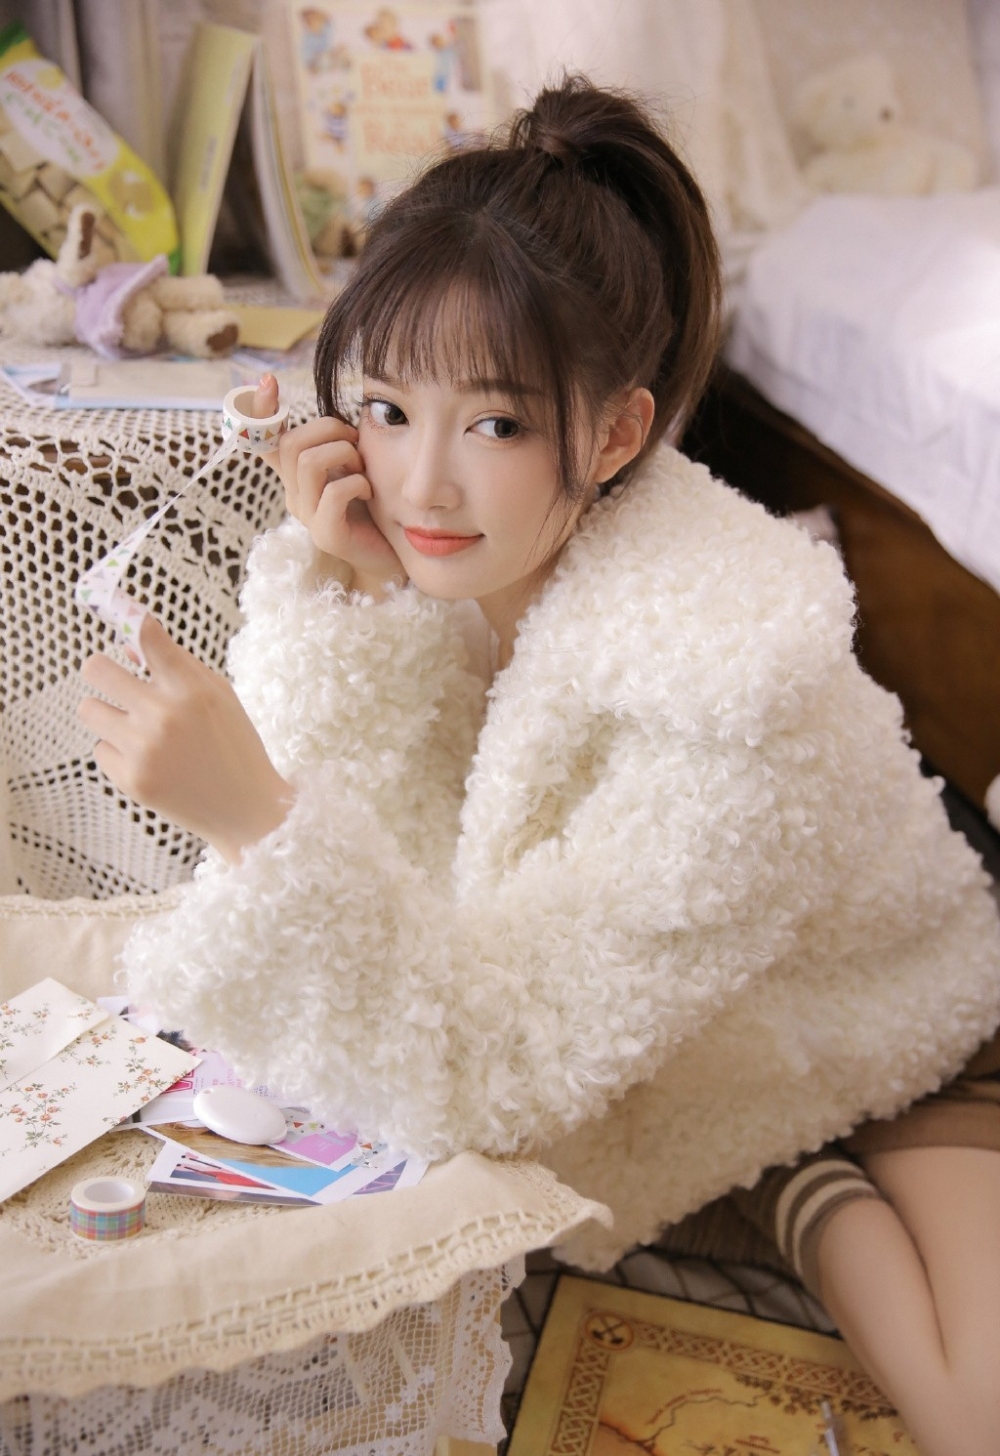 日本少女牛奶肌肤清纯性感写真图片